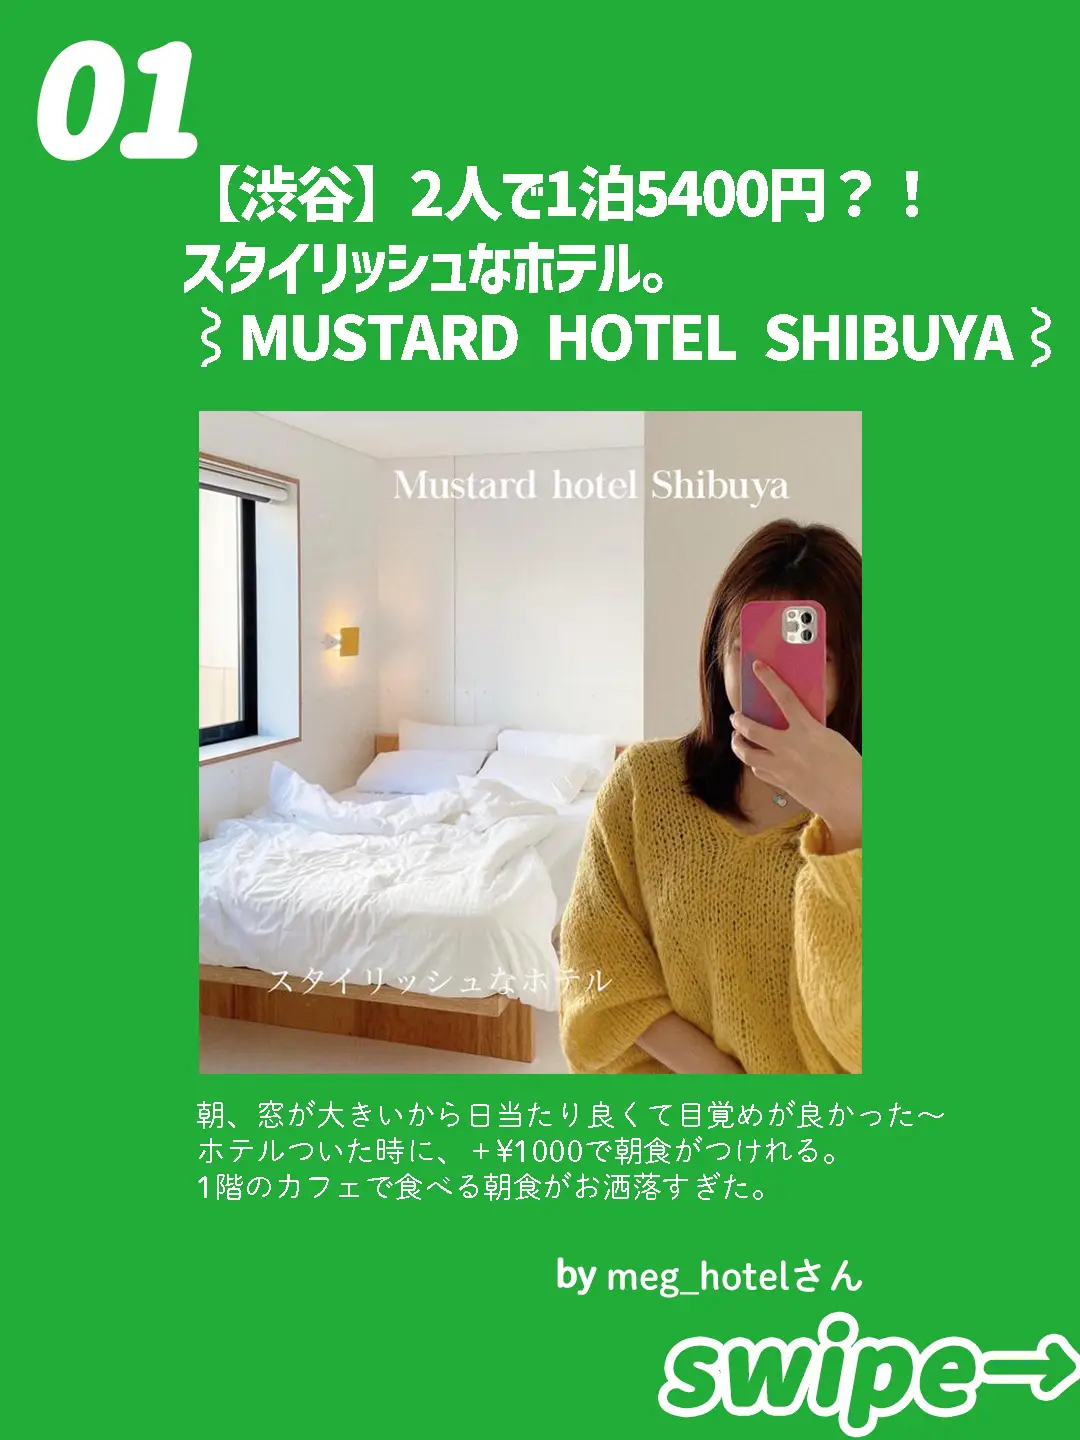 渋谷 2人で1泊5400円 スタイリッシュなホテル Meg Hotelが投稿したフォトブック Lemon8